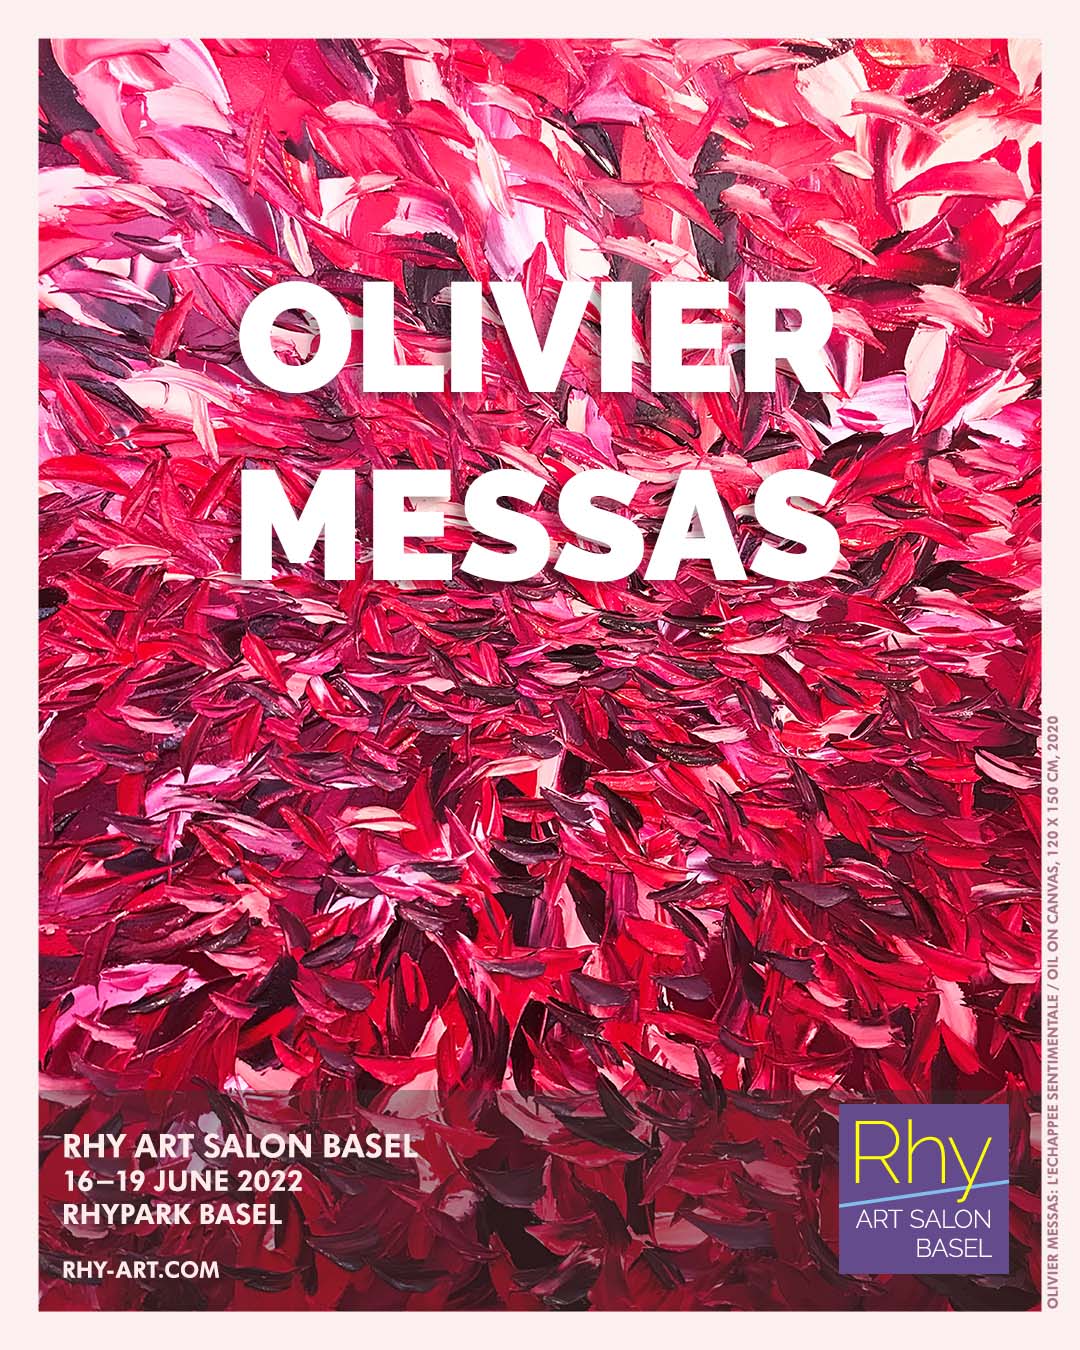 Olivier Messas at Rhy Art Salon Basel 2022